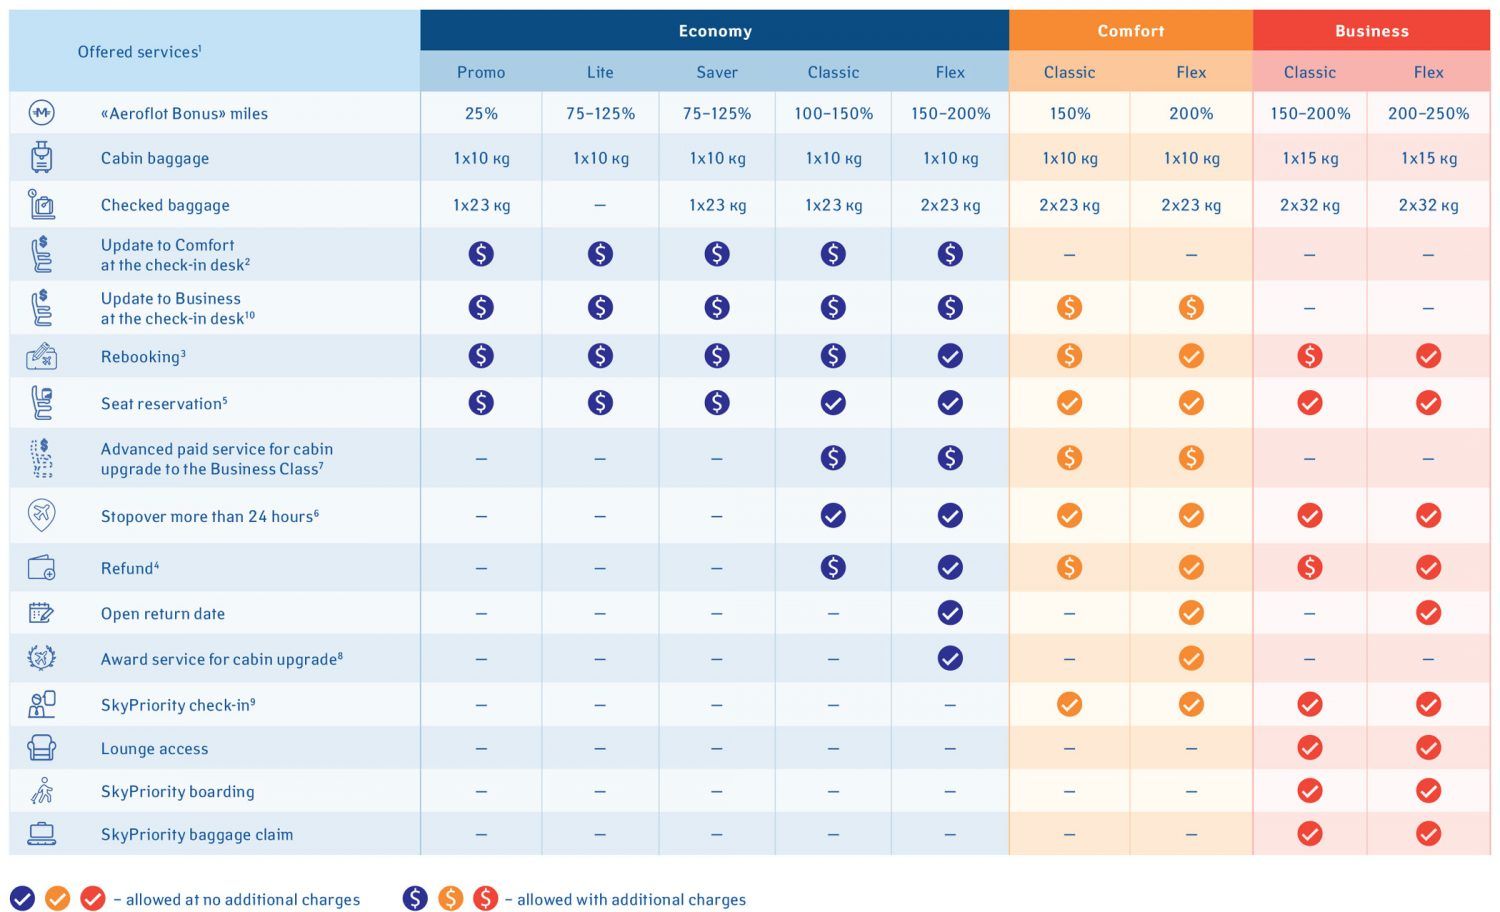 Tabla comparativa de los servicios ofrecidos por Aeroflot según la clase contratada